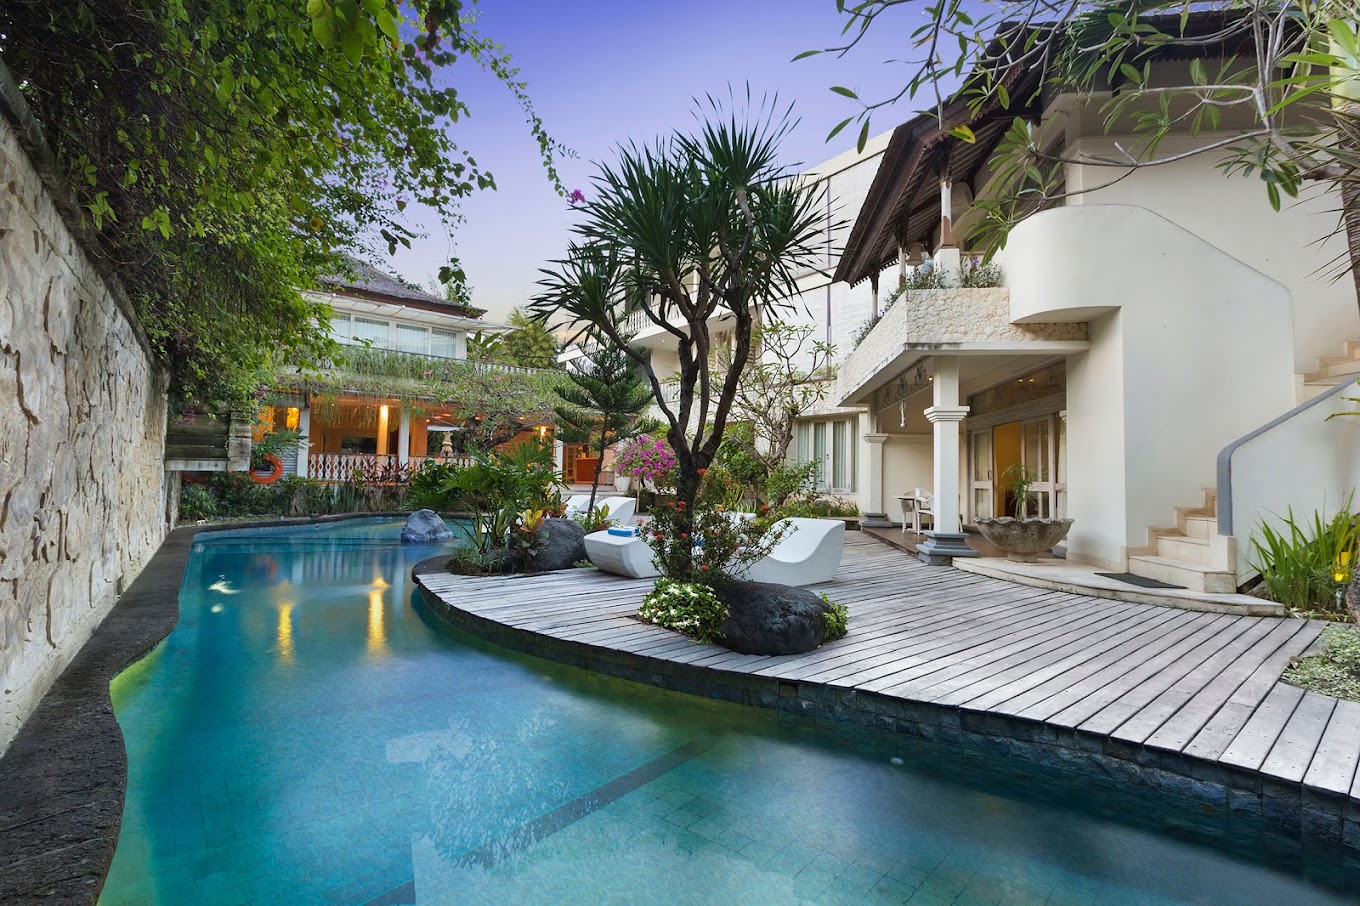 Kresna al mare Bali Hotel